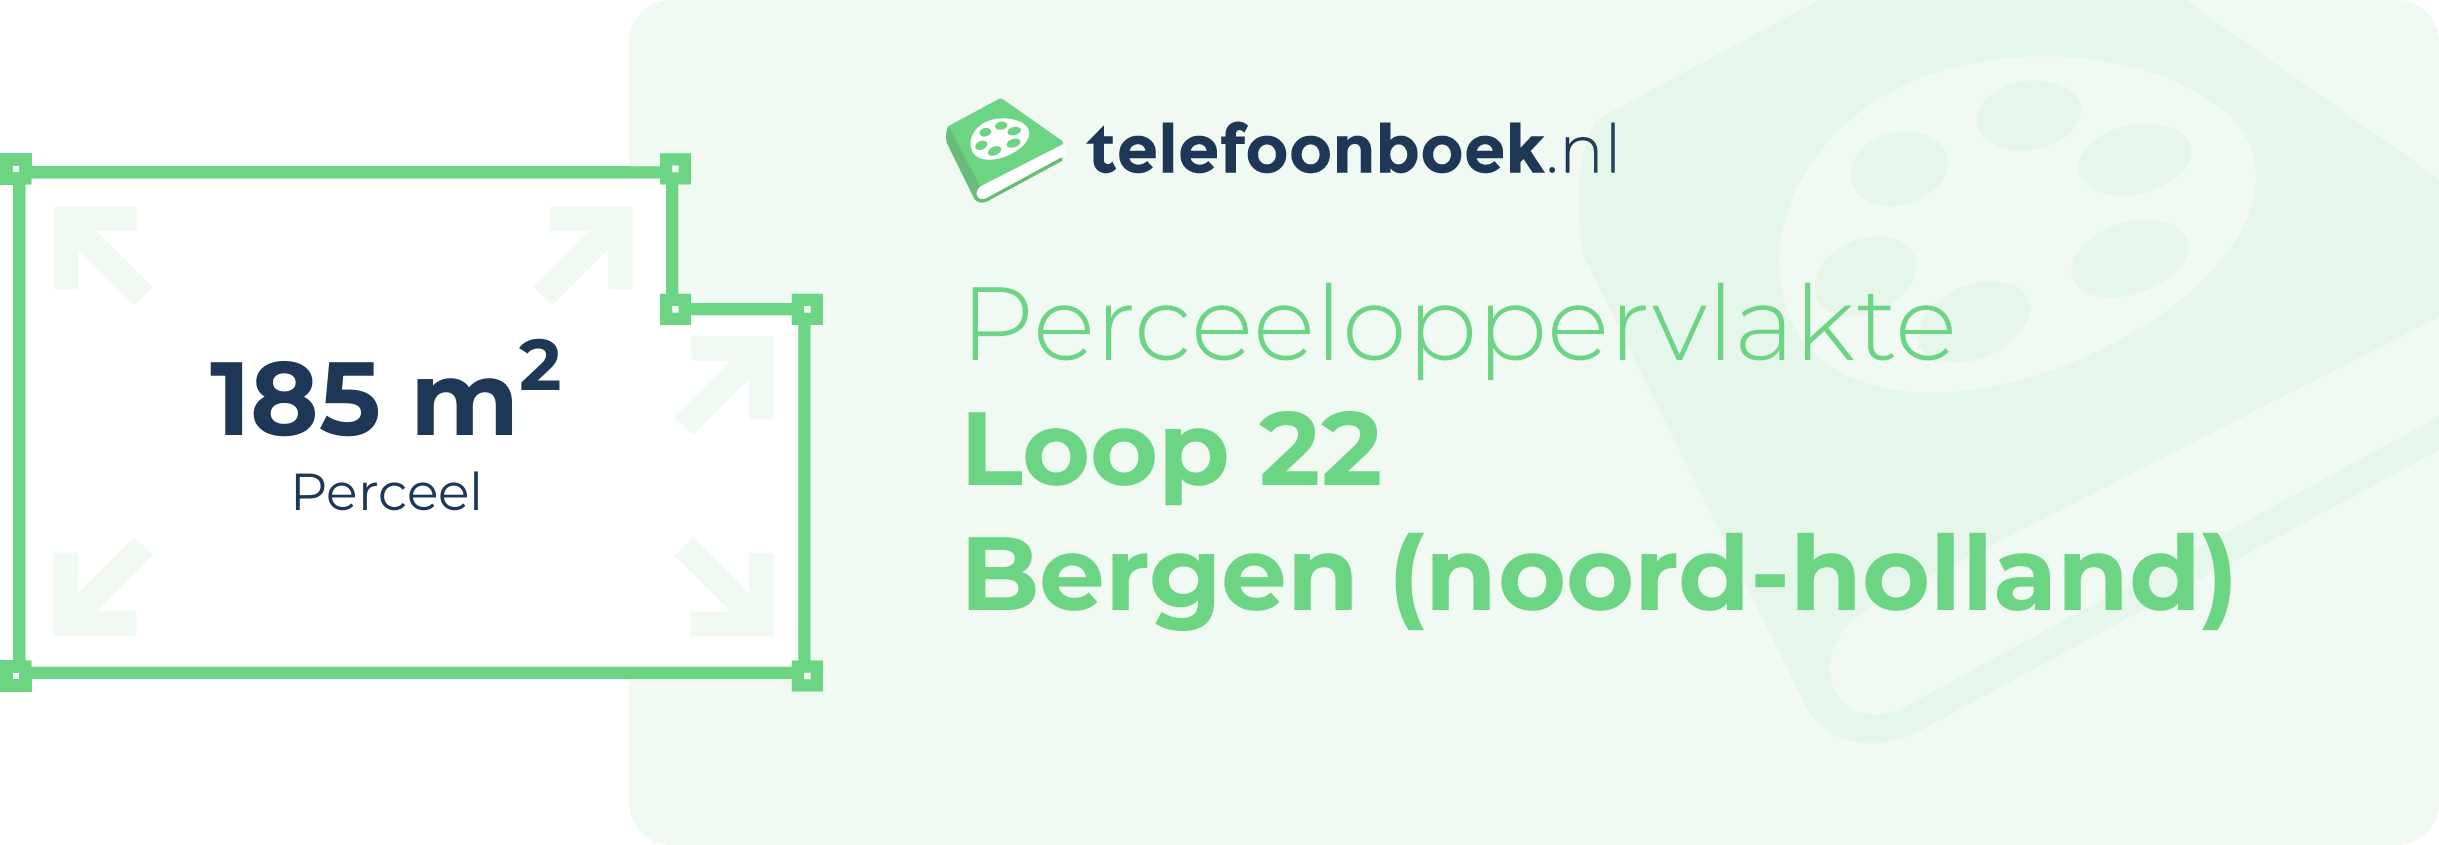 Perceeloppervlakte Loop 22 Bergen (Noord-Holland)